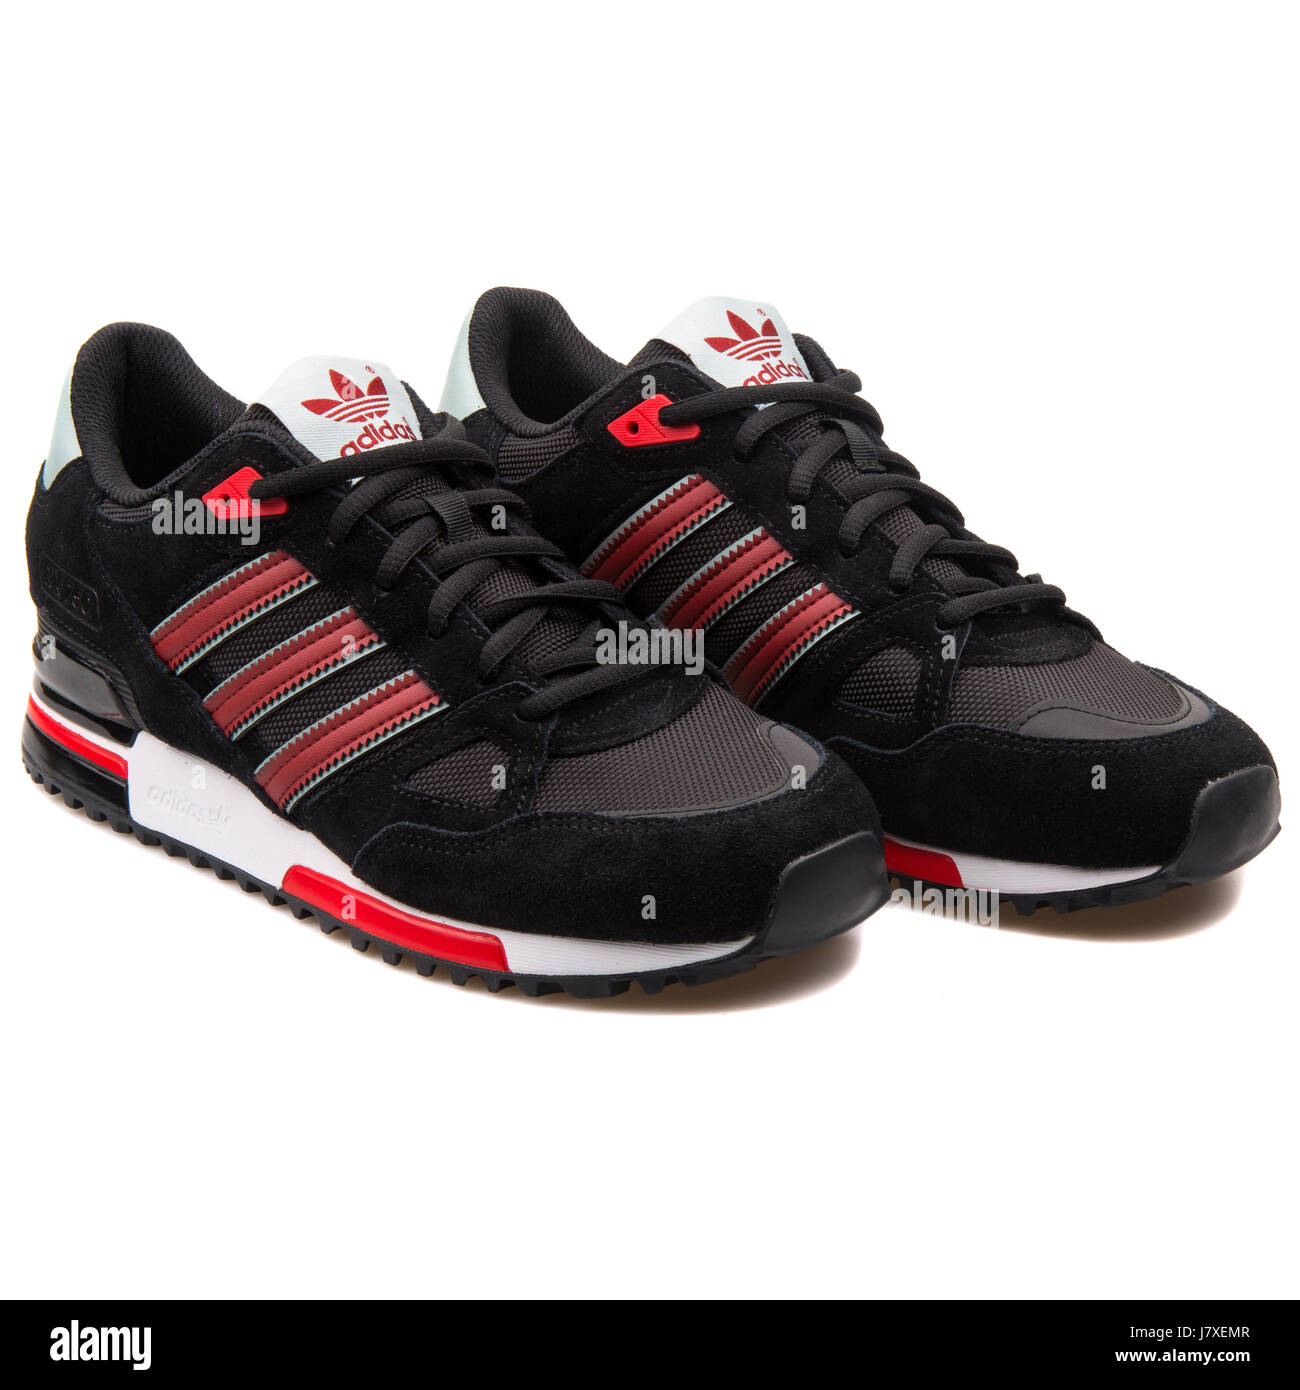 Adidas ZX 750 uomini nero con rosso Sneakers - B24856 Foto stock - Alamy